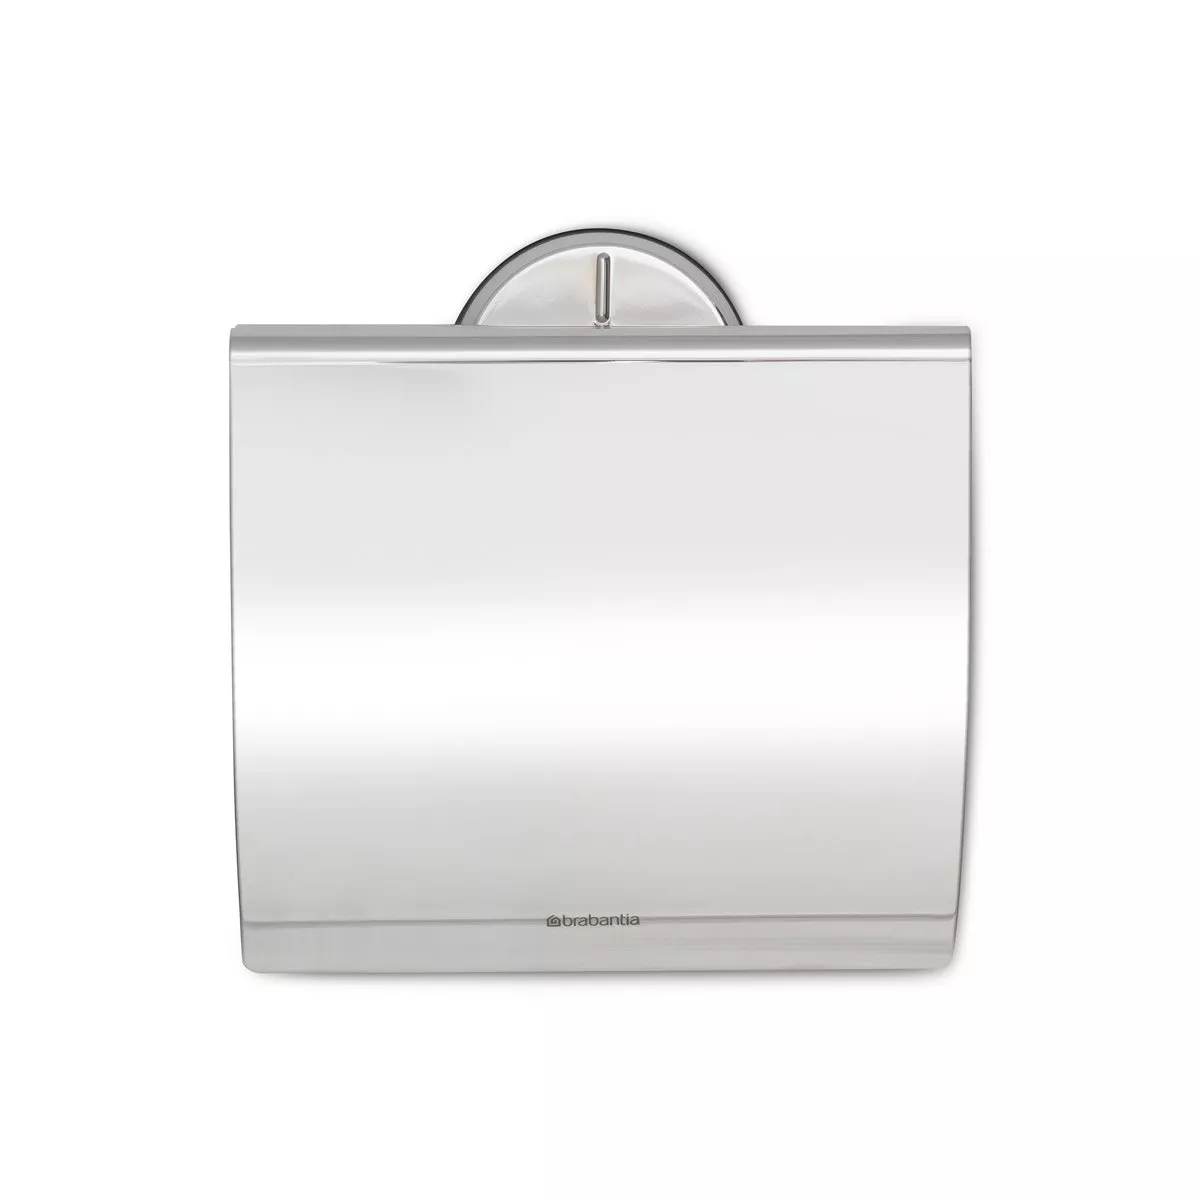 #1 - Brabantia Profile toiletpapirholder brilliant steel (sølv)